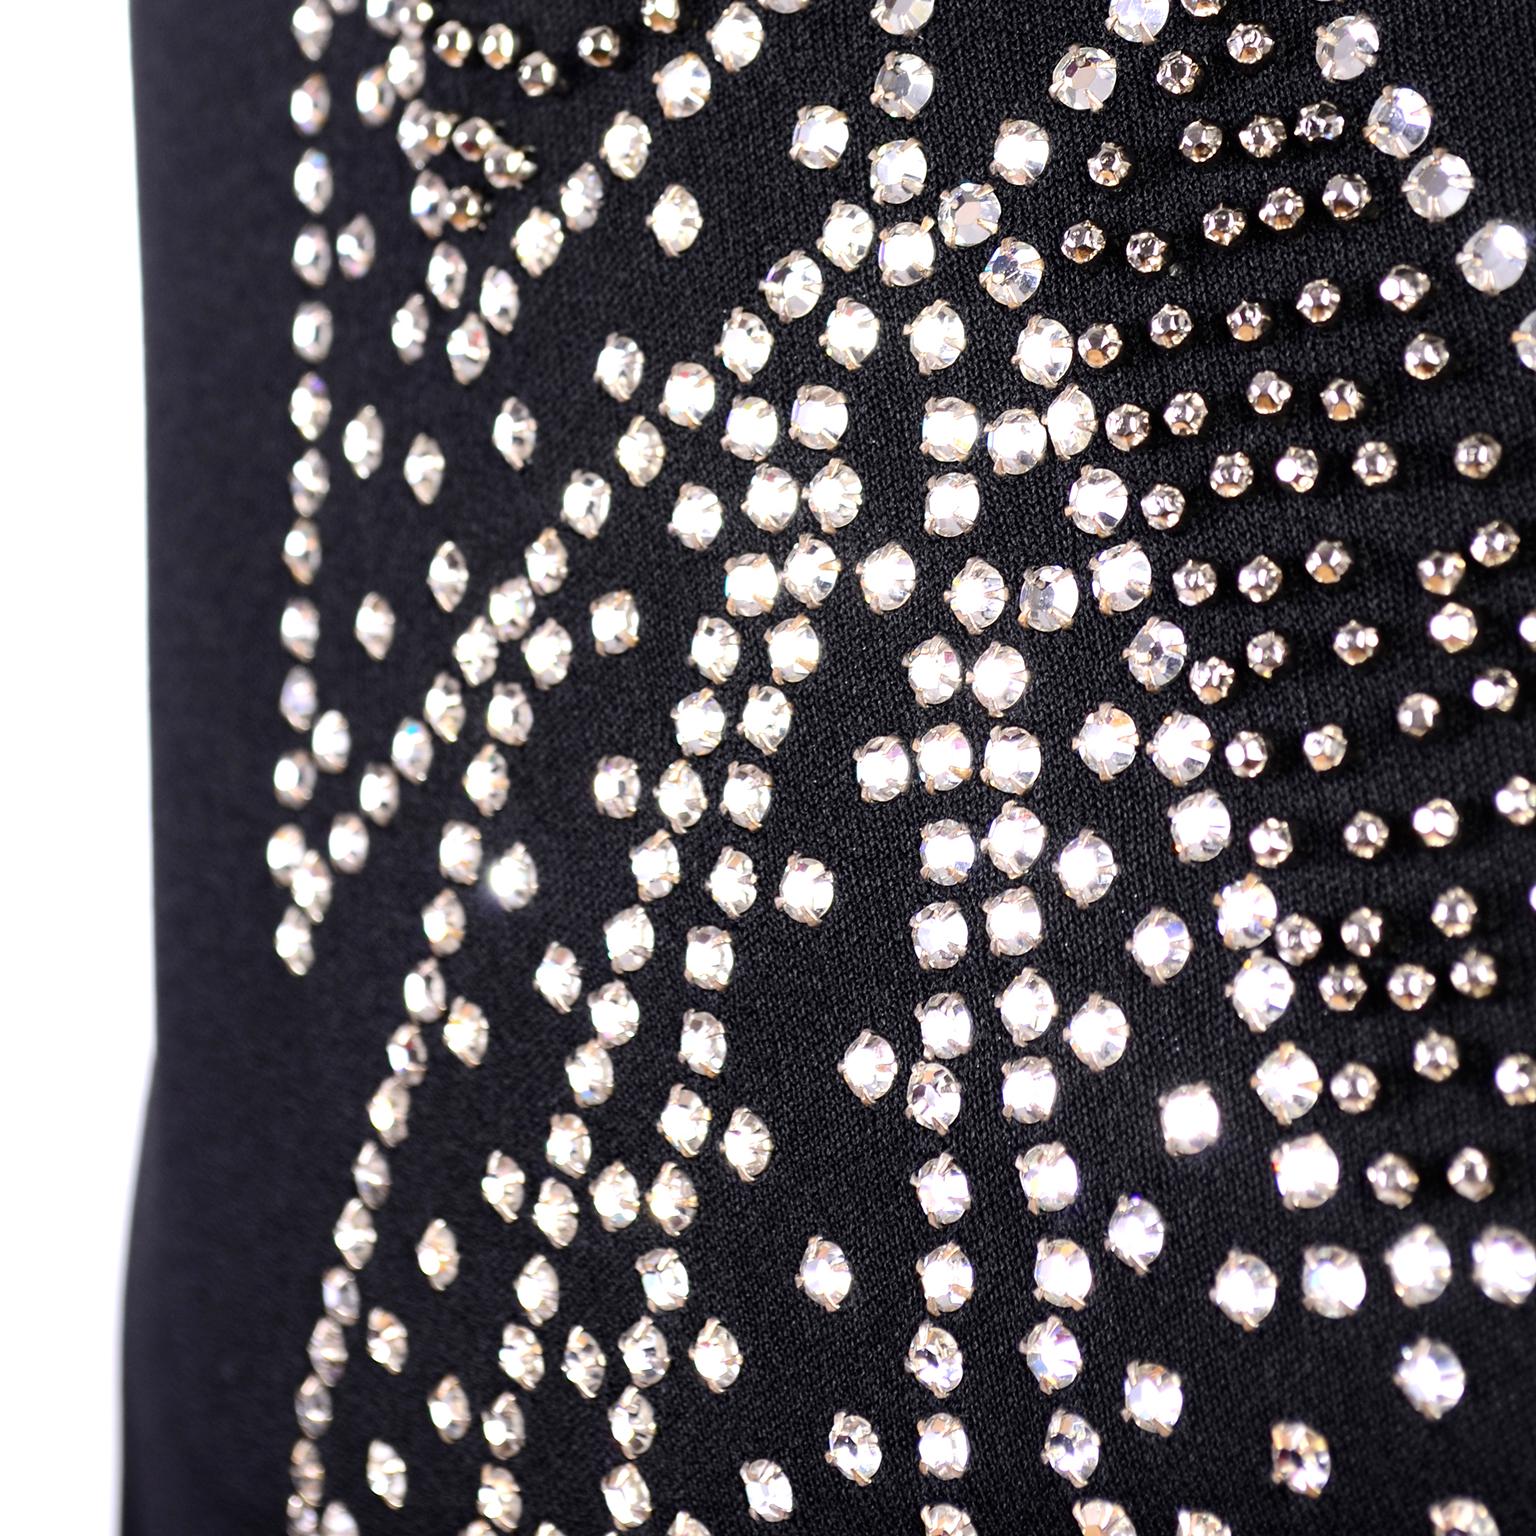 Rosalee 1960er Jahre Brooklyn Boutique Vintage schwarzes Kleid Trompe L'oeil Strass Schleife 1